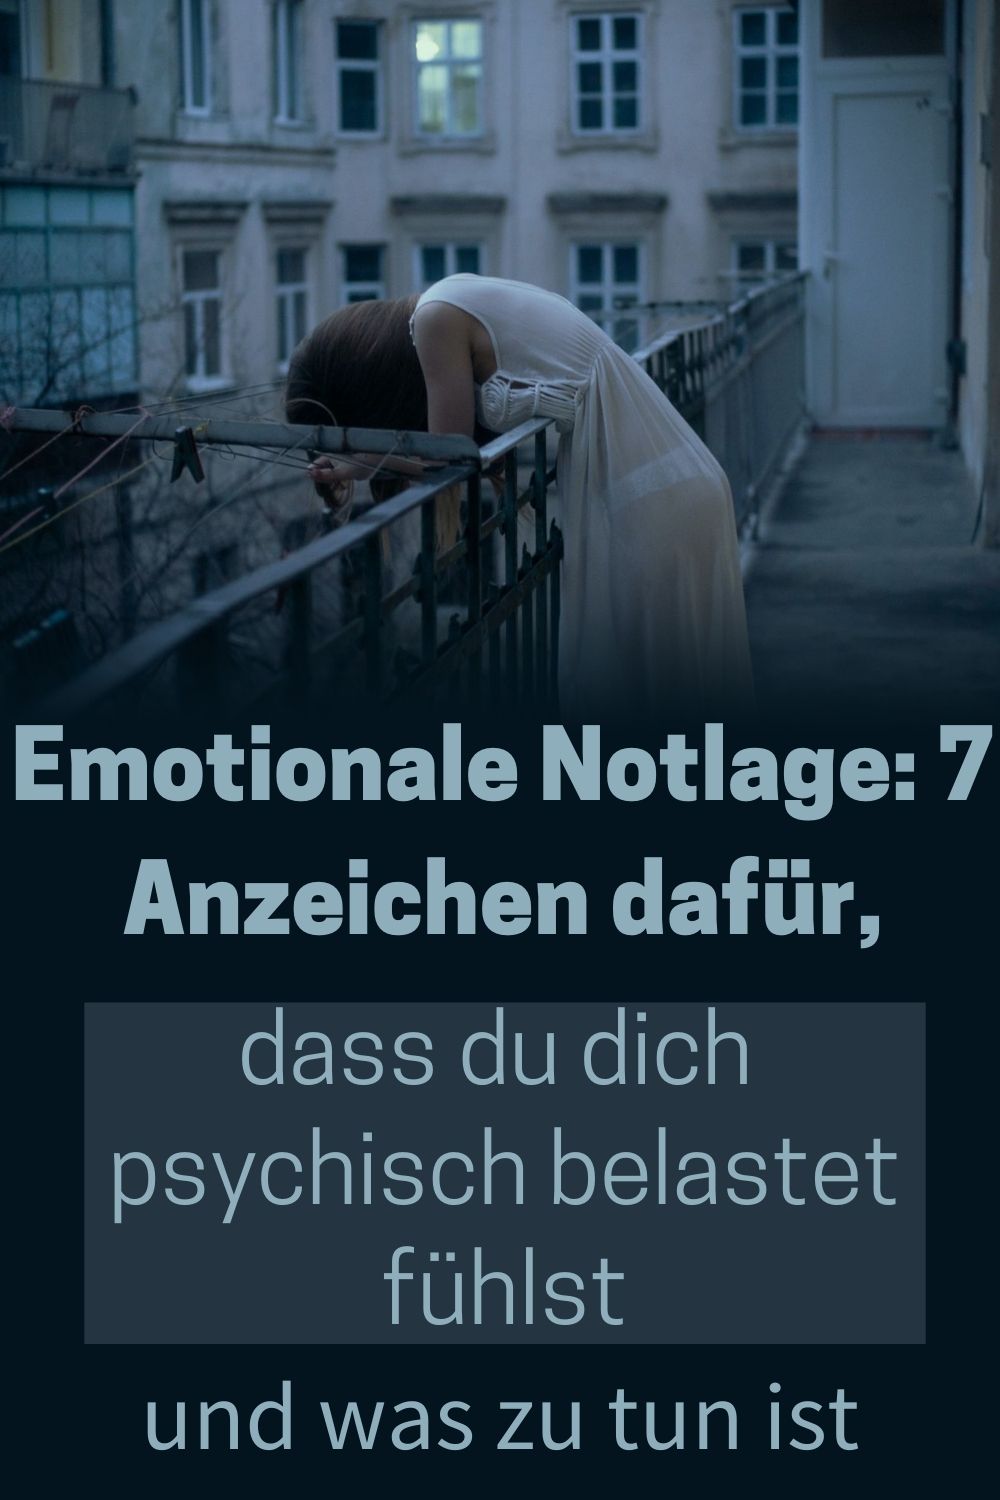 Emotionale-Notlage-7-Anzeichen-dafuer-dass-du-dich-psychisch-belastet-fuehlst-und-was-zu-tun-ist